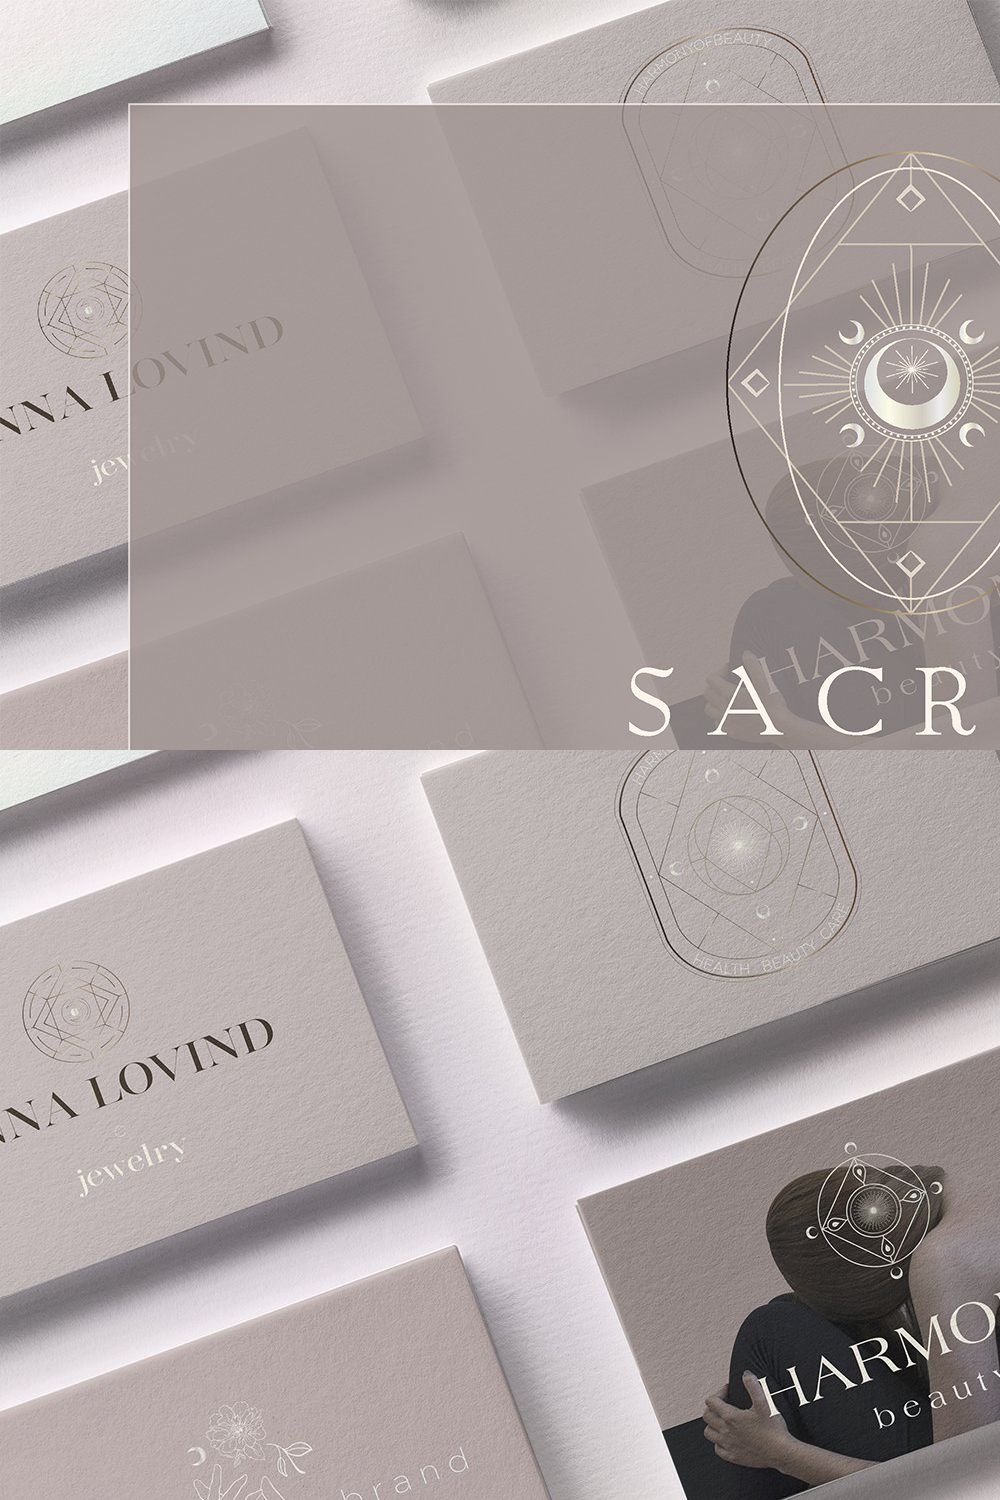 Sacral- Brand Kit pinterest preview image.